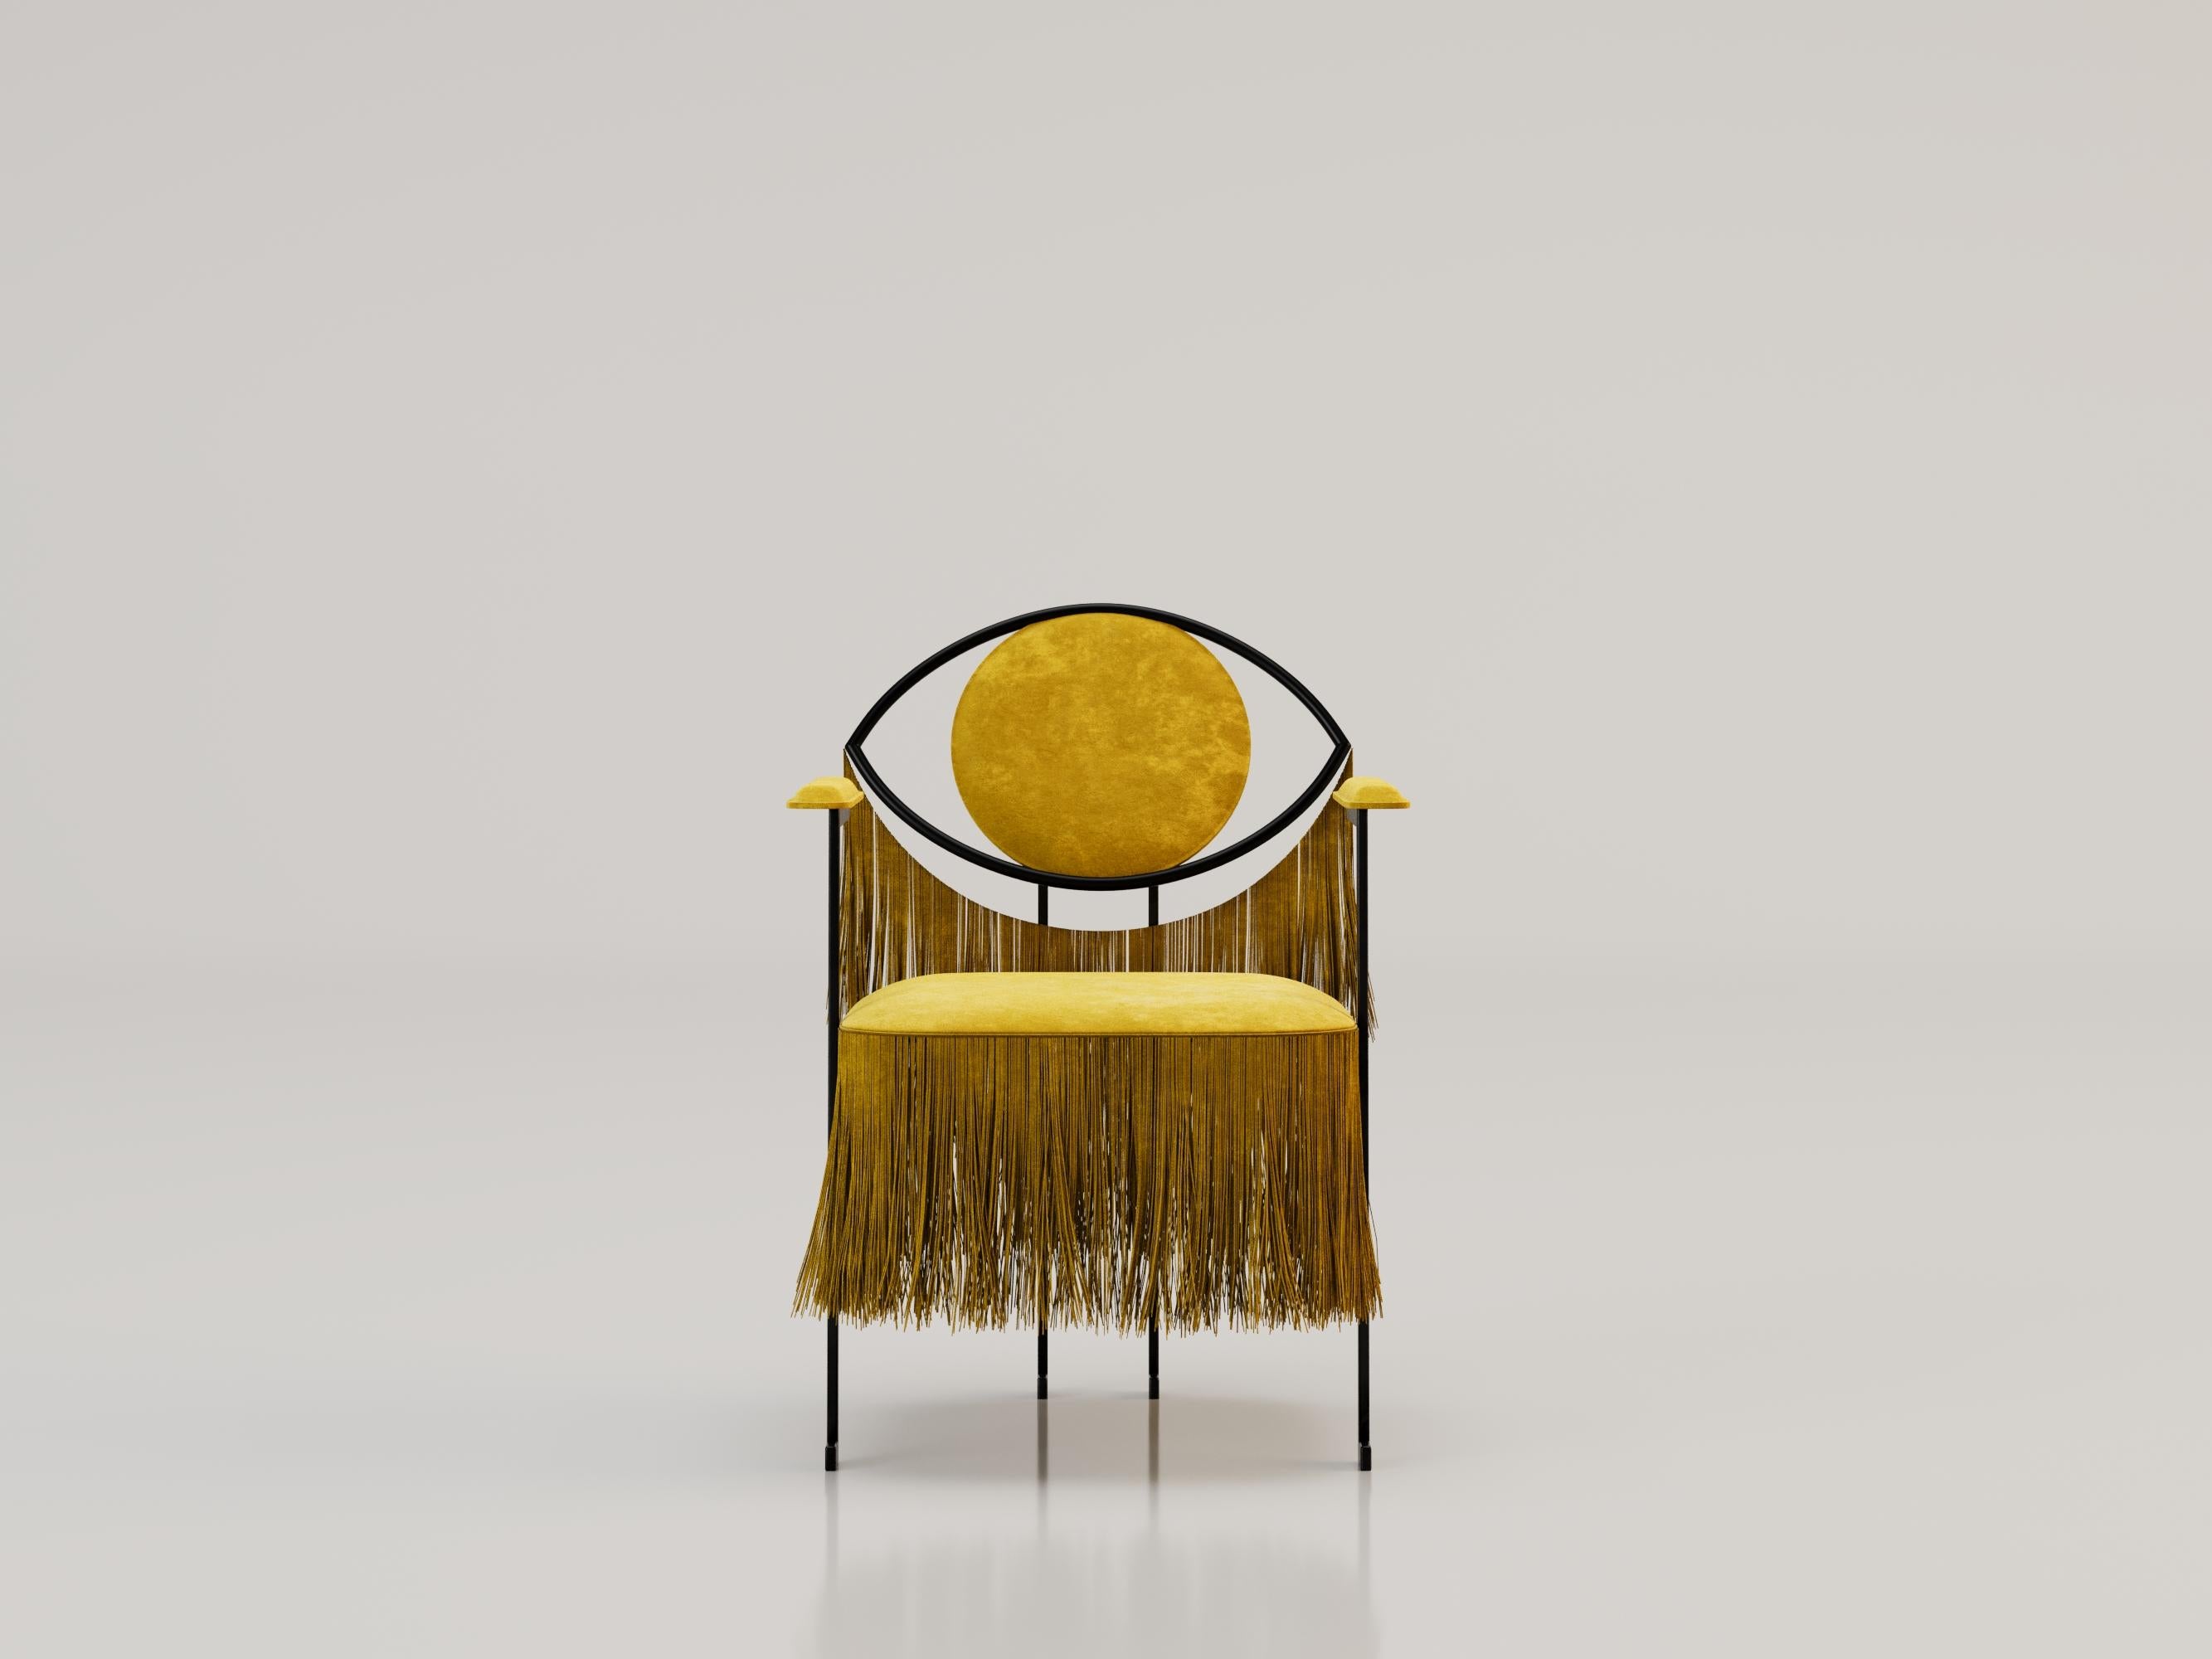 Chaise LA MYSTERIEUSE d'Alexandre Ligios

MÉTAL ET VELOURS

L 33 x L 21 X H 31

La chaise est dotée d'une structure métallique épurée qui lui confère une allure contemporaine et élégante. Son assise en velours ornée de franges apporte une touche de